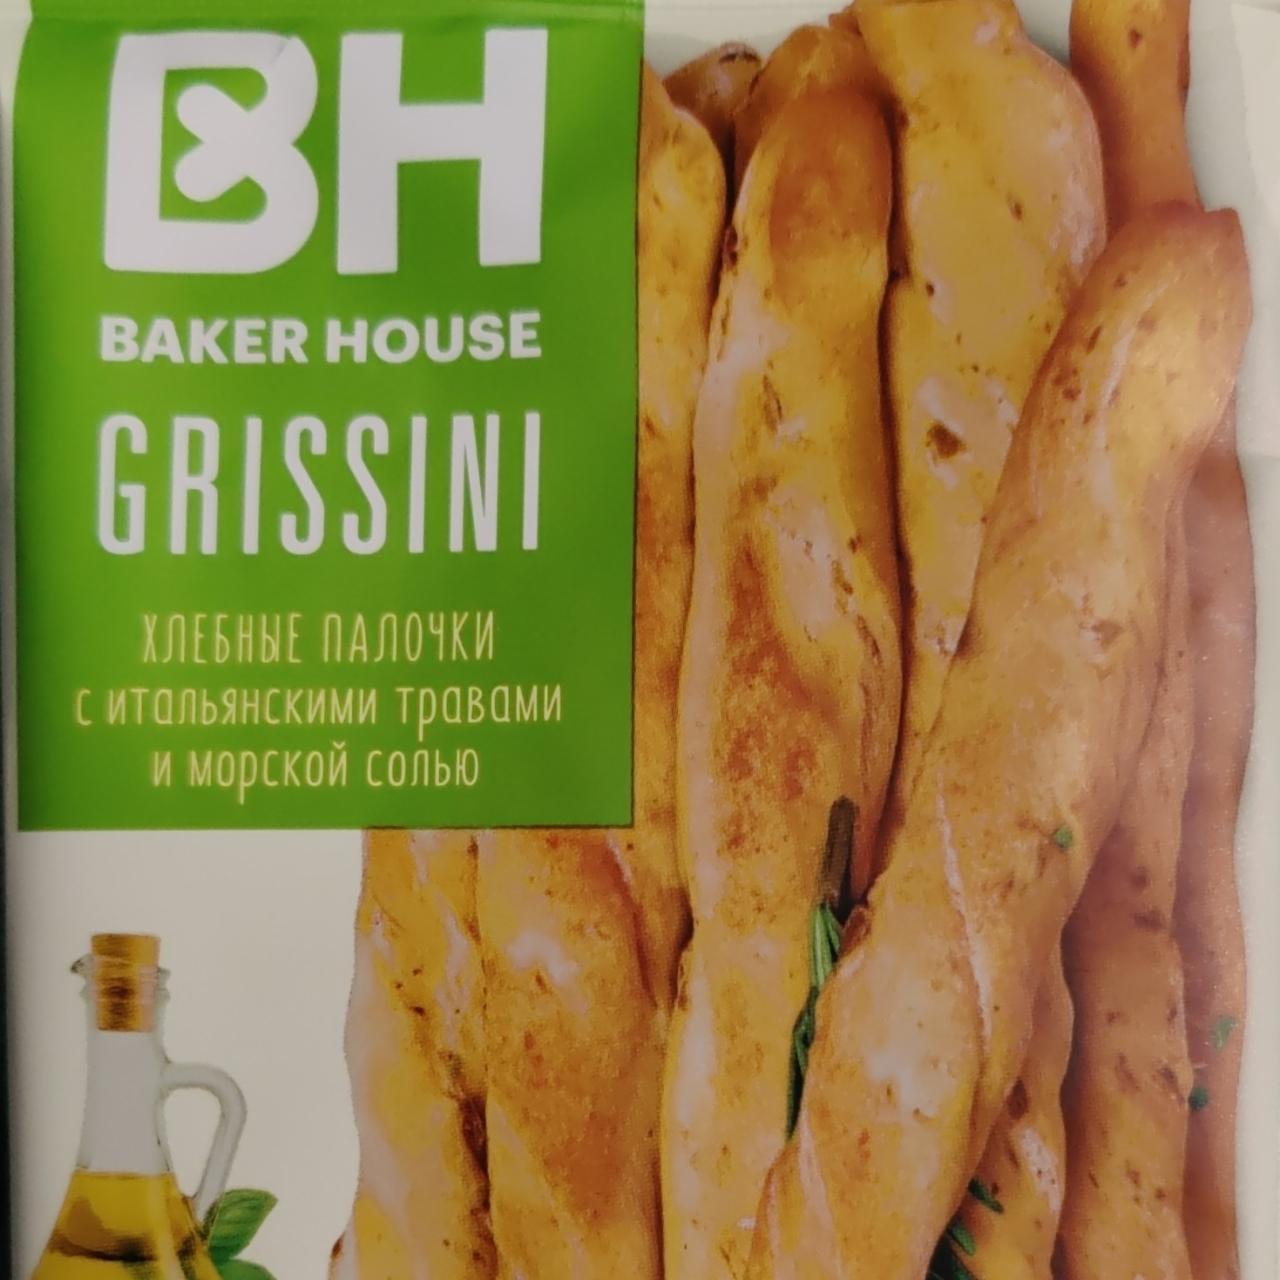 Фото - Хлебные палочки с итальянскими травами и морской солью BH Baker House